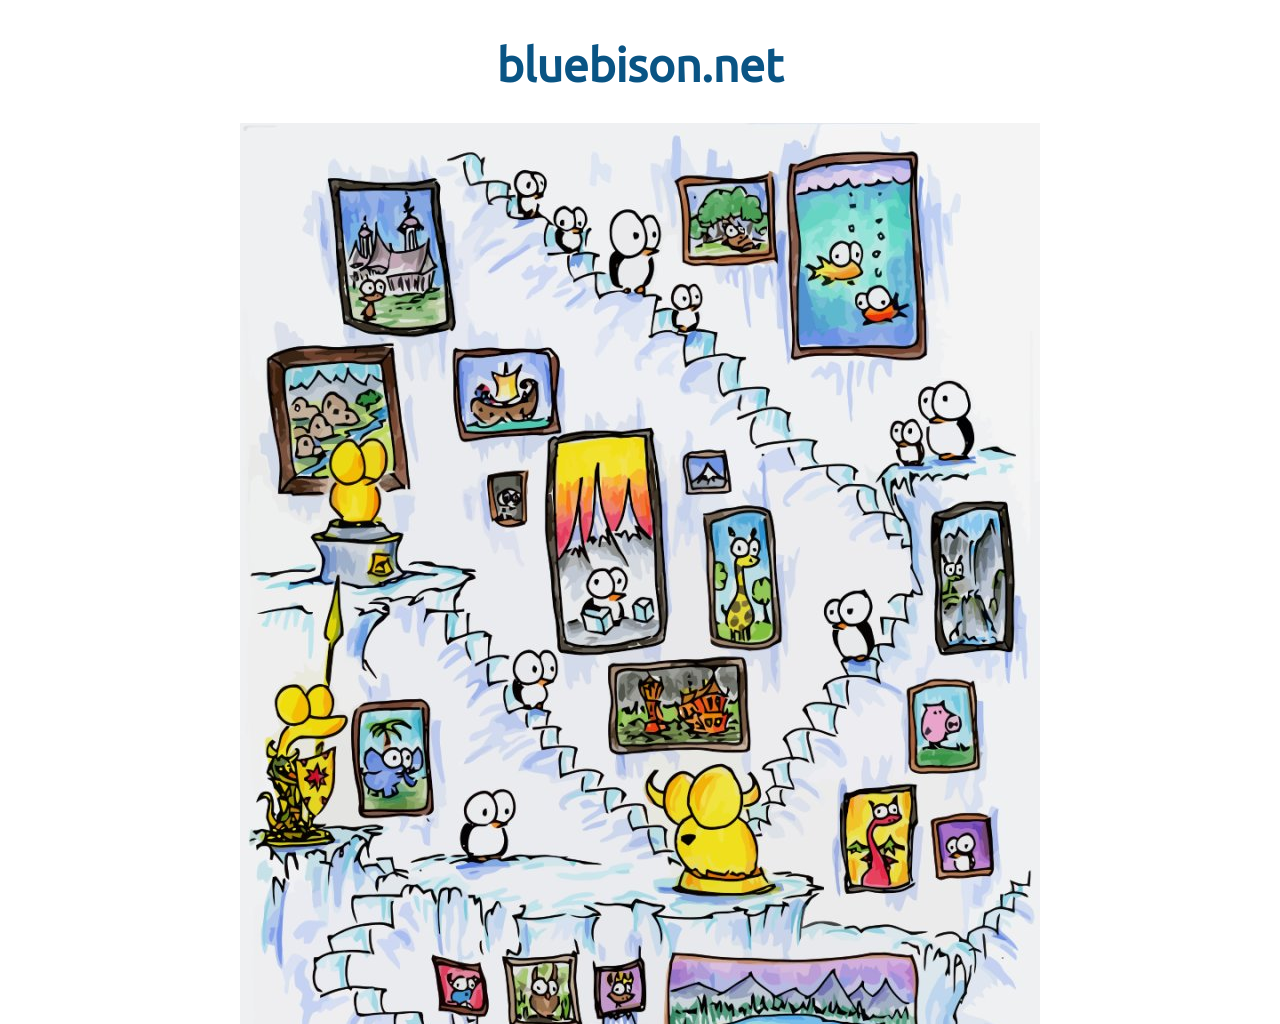 bluebison.net